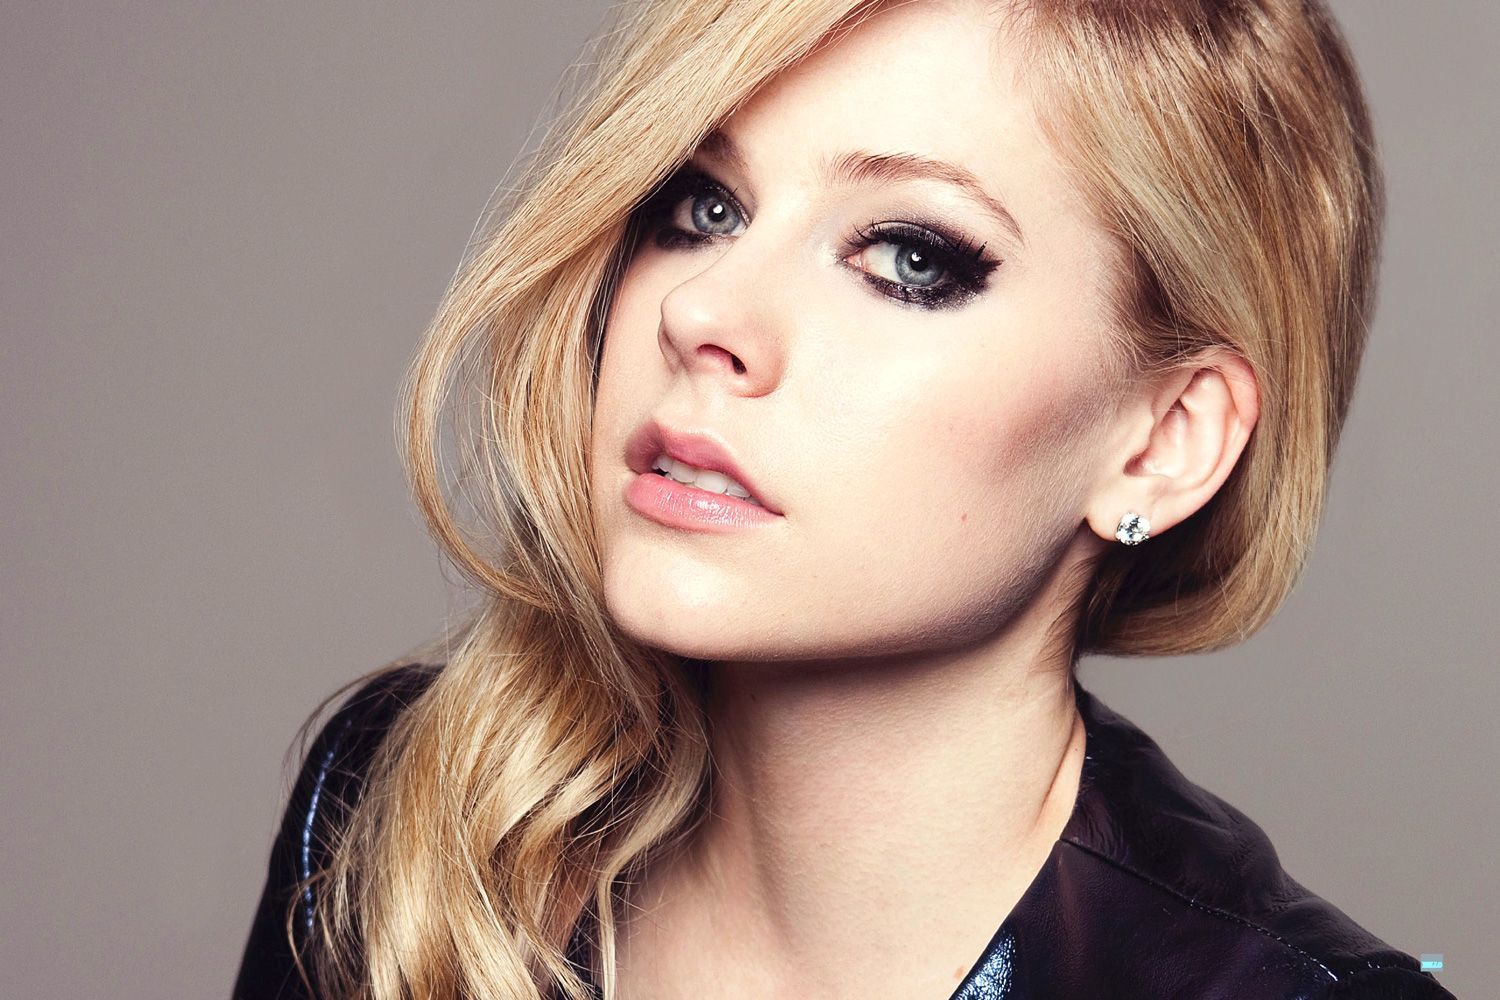 Avril Lavigne morta 10 anni fa e sostituita da un’attrice: la strana teoria circola sul web